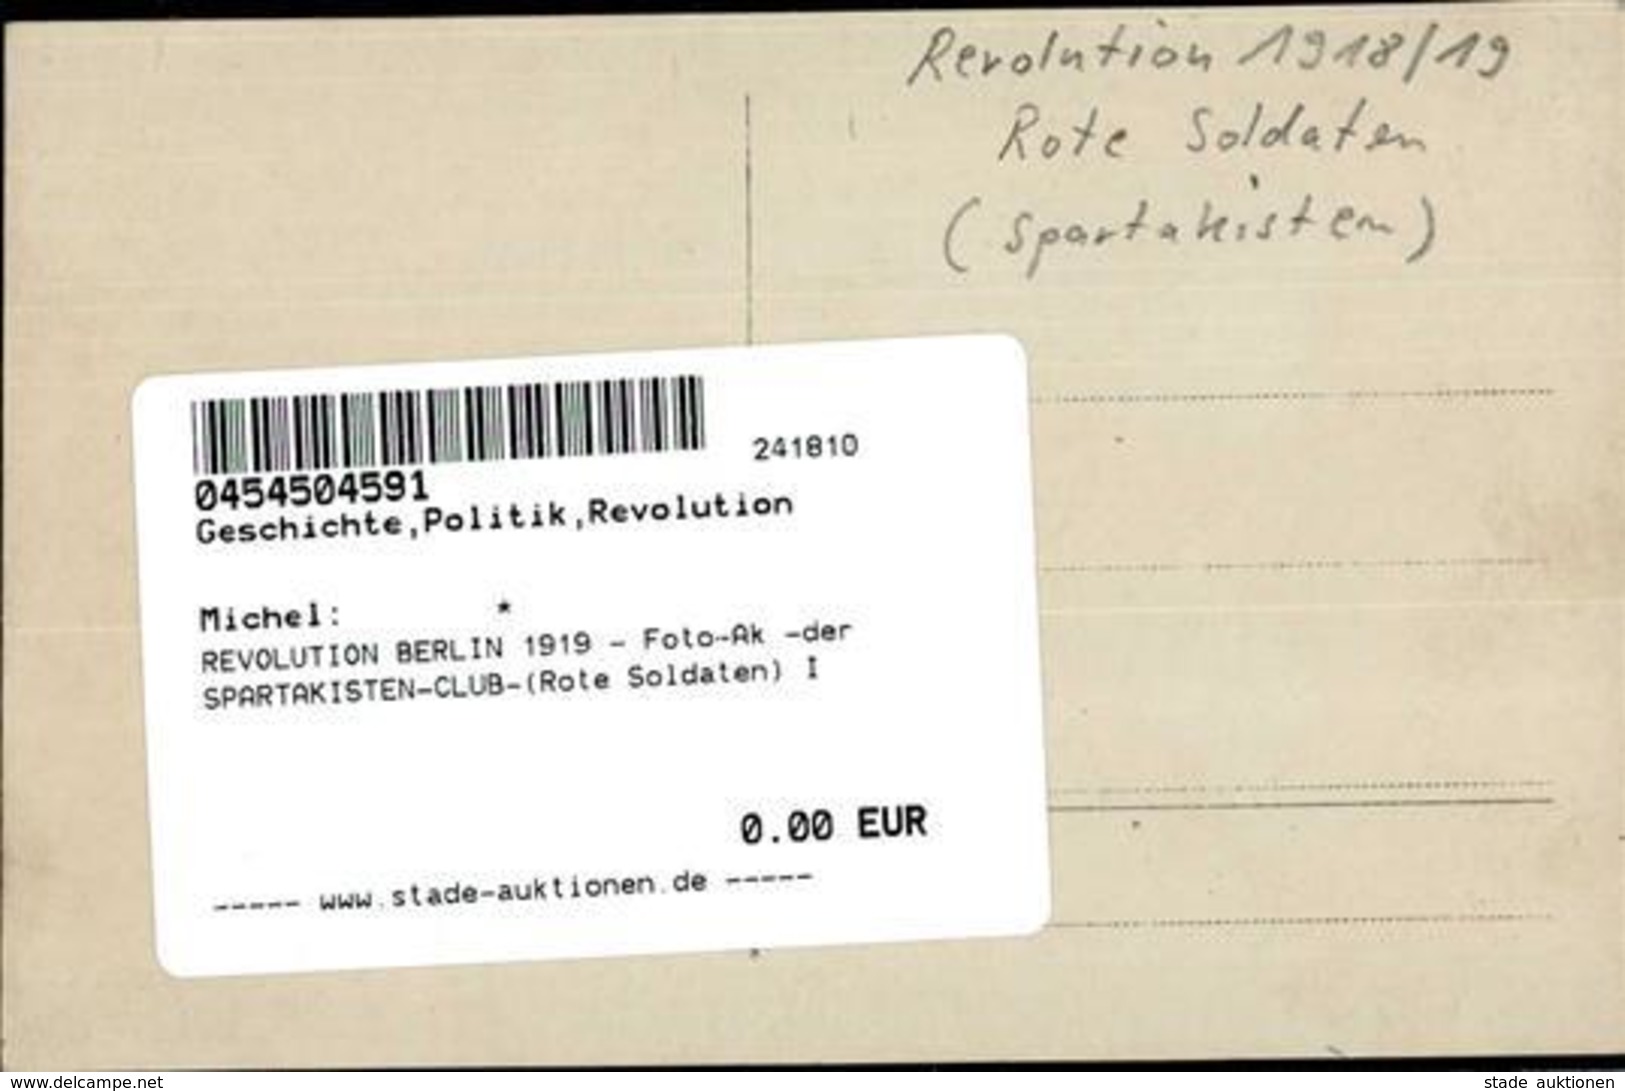 REVOLUTION BERLIN 1919 - Foto-Ak -der SPARTAKISTEN-CLUB-(Rote Soldaten) I - Oorlog